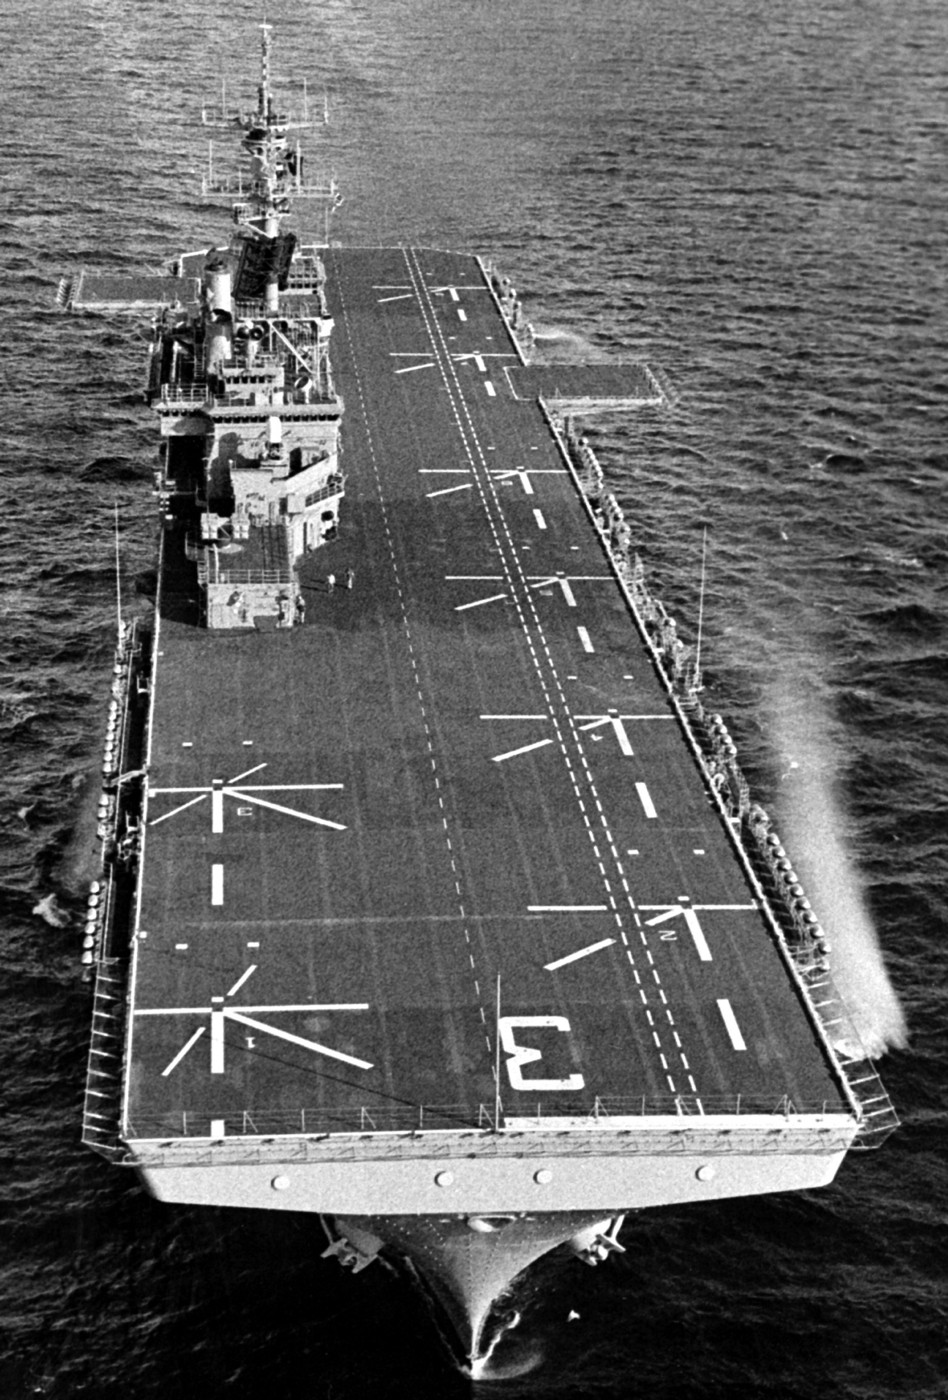 lhd-3 uss kearsarge wasp class amphibious assault ship landing dock us navy pcu trials 22